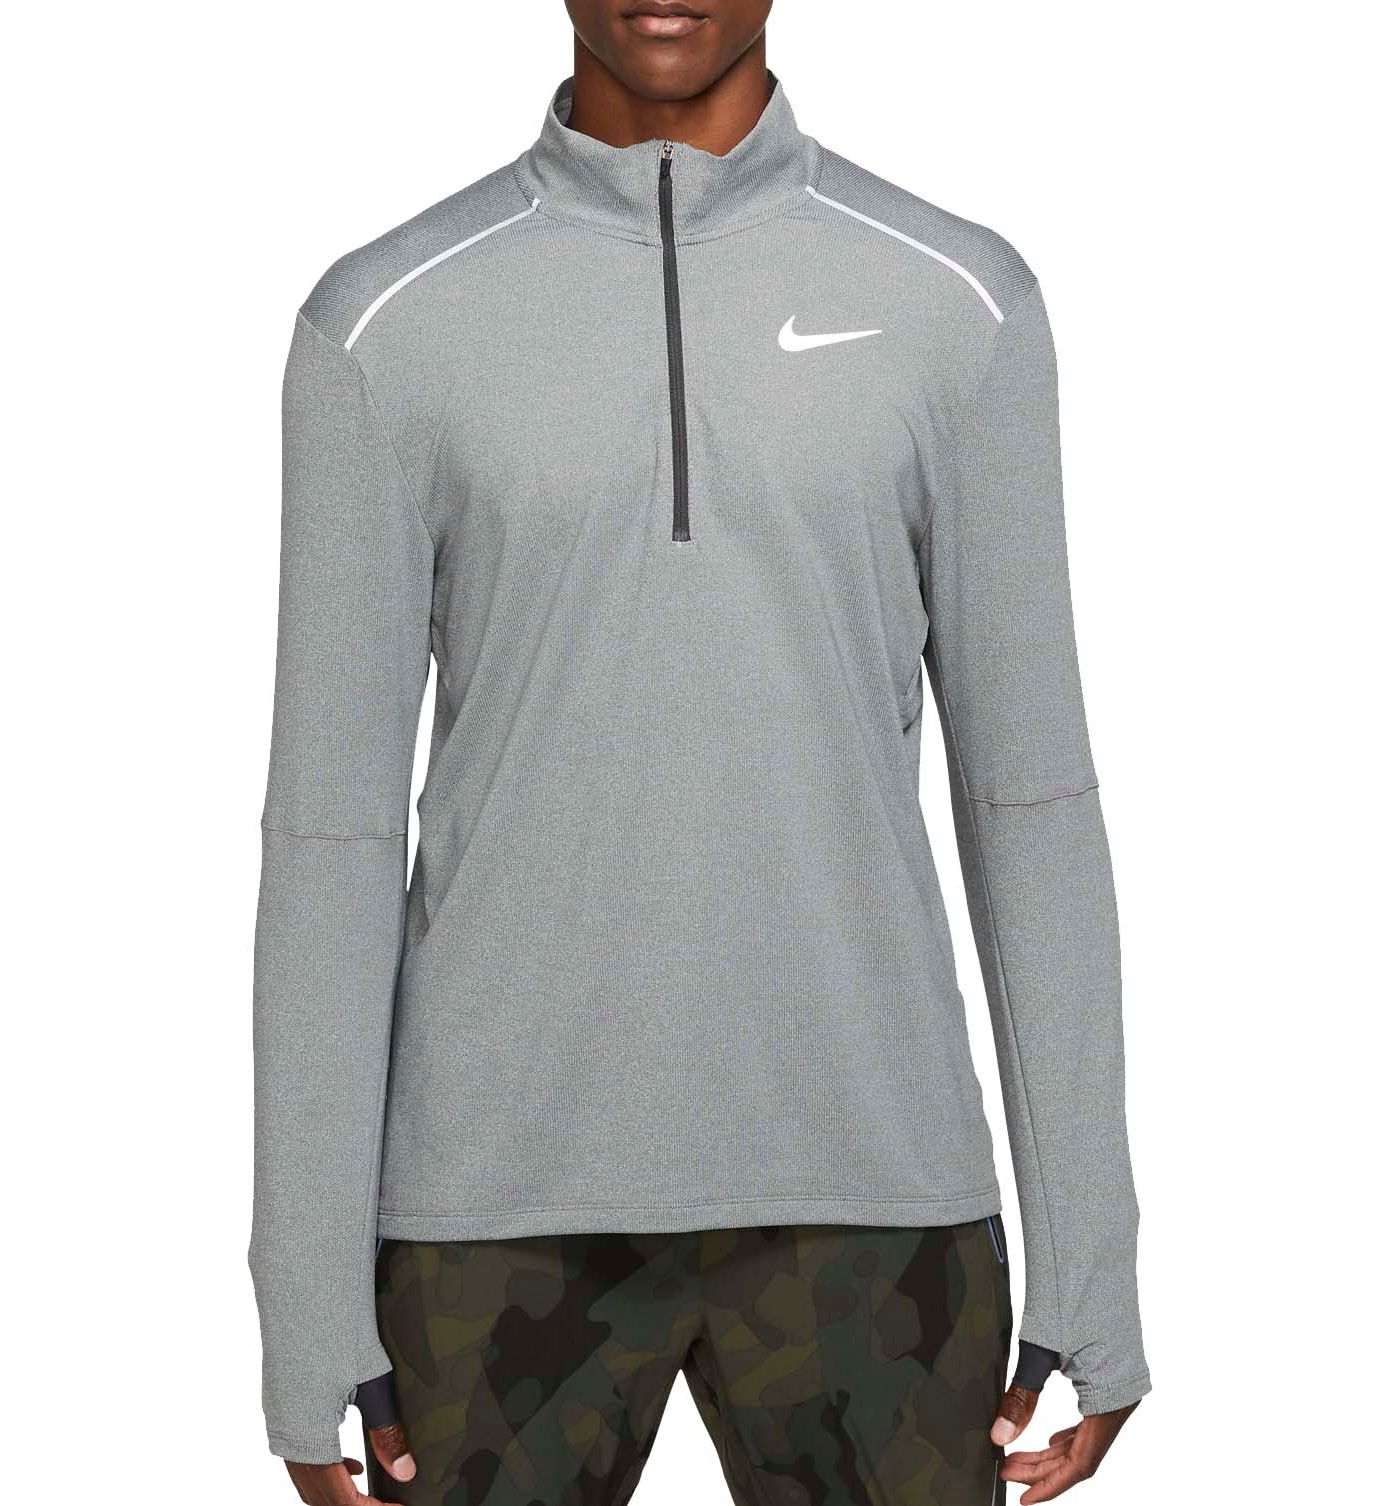 Download Nike Men's Element ½ Zip Mock Neck Running Long Sleeve ...